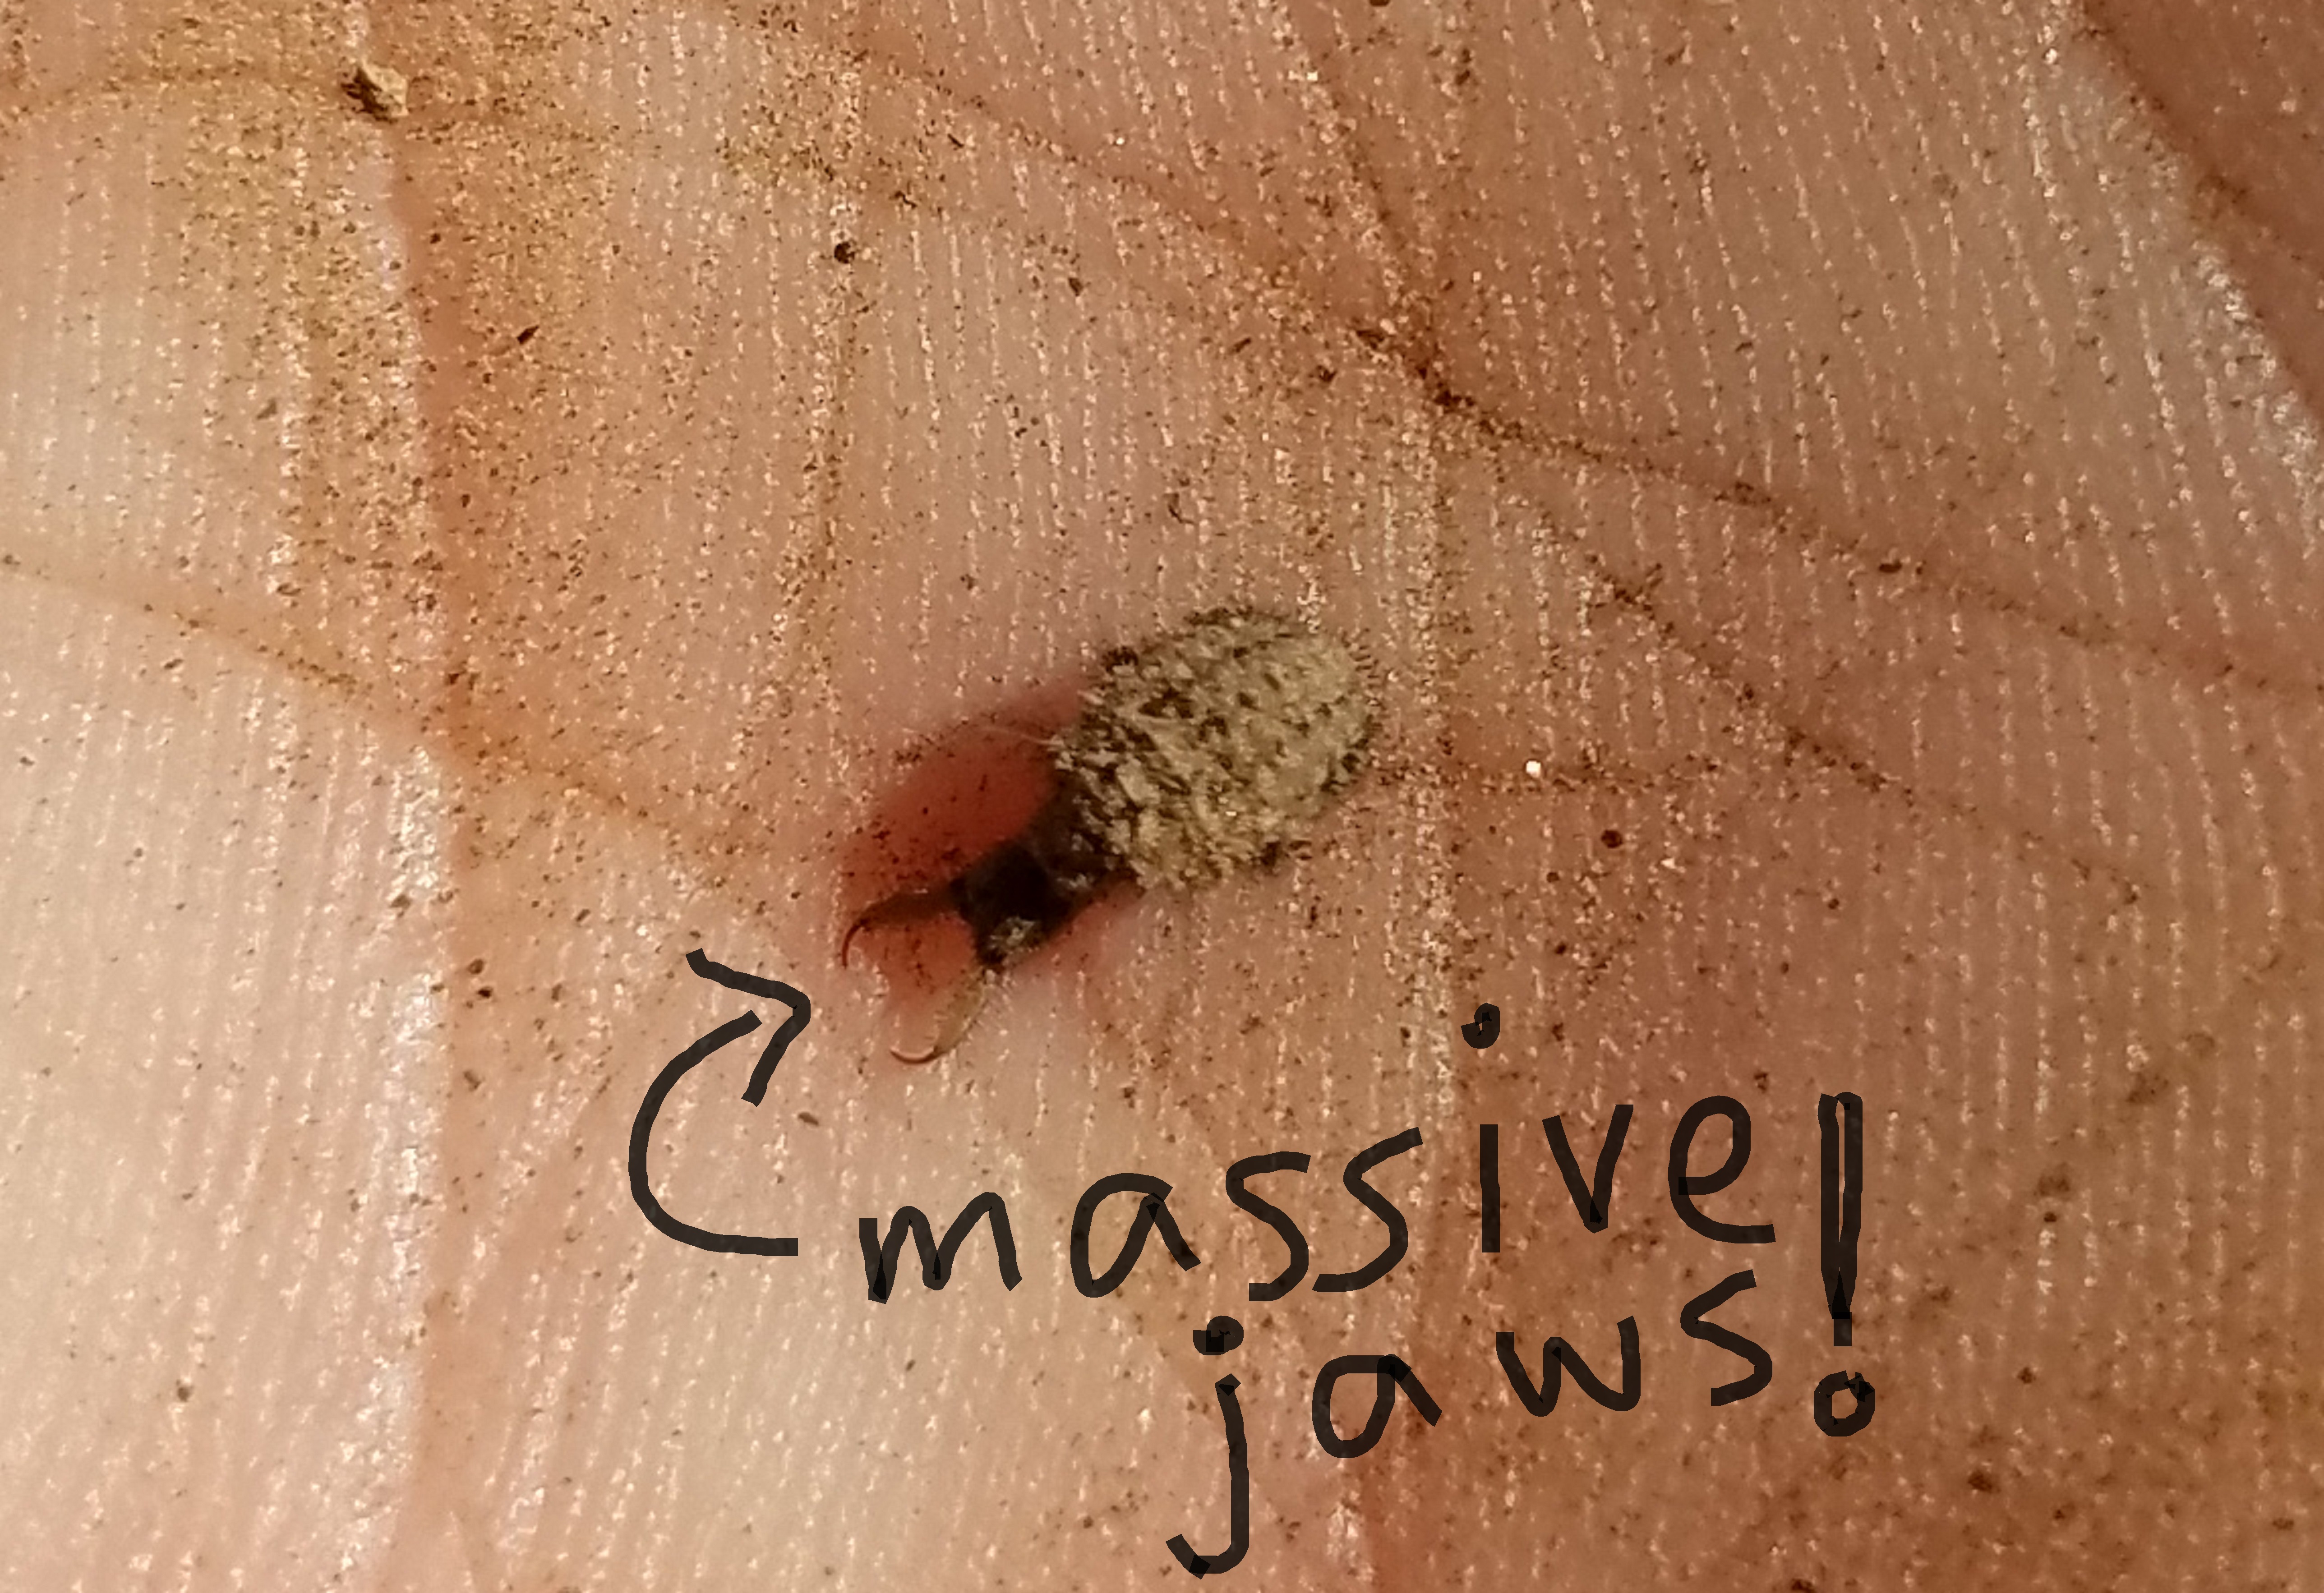 tucson antlion larva